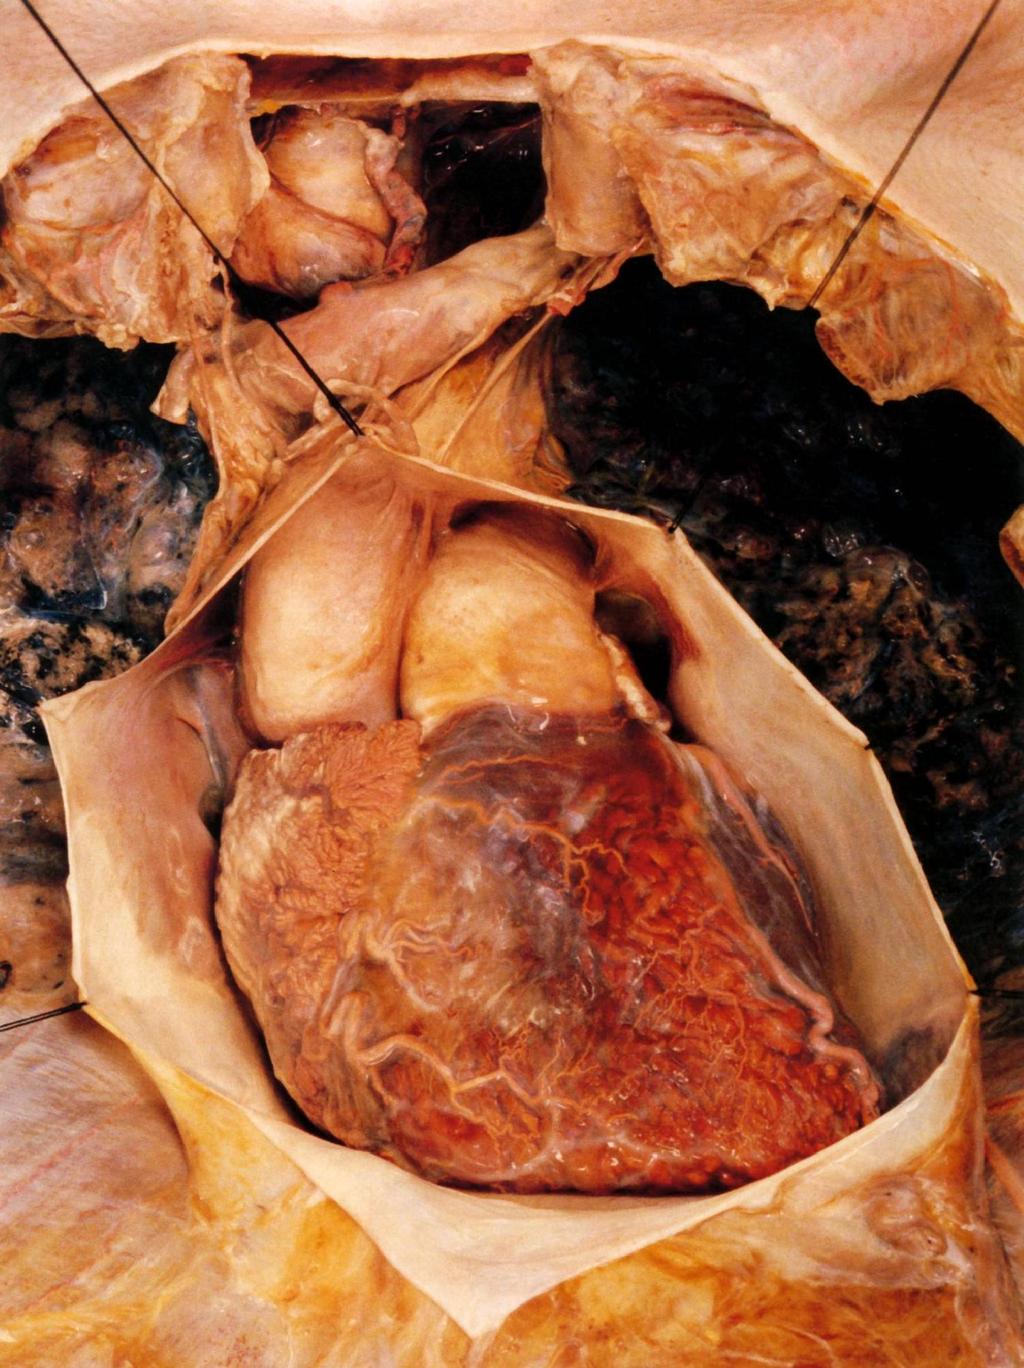 A felnyitott szívburok (jól( l l látszik a parietalis pericardium külső, fibrózus rétege, amely a rekesz felszínéhez rögzr gzül) A pericardium két t rétegr tegének ún.